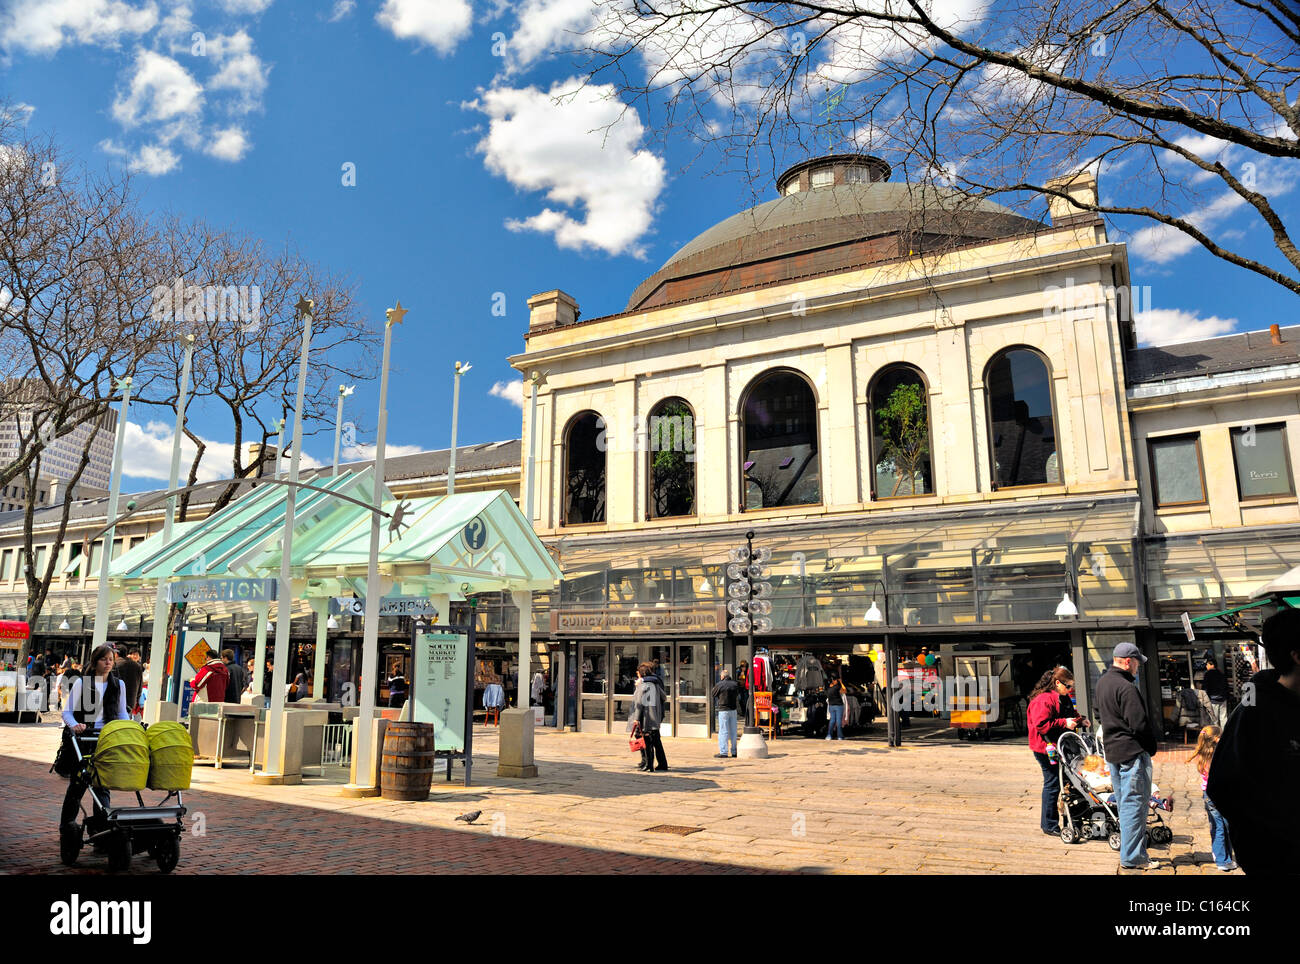 Les acheteurs, les habitants de Boston et les touristes profiter de Faneuil Hall Marketplace à Boston, Massachusetts, USA un jour de printemps près de Quincy Market Banque D'Images